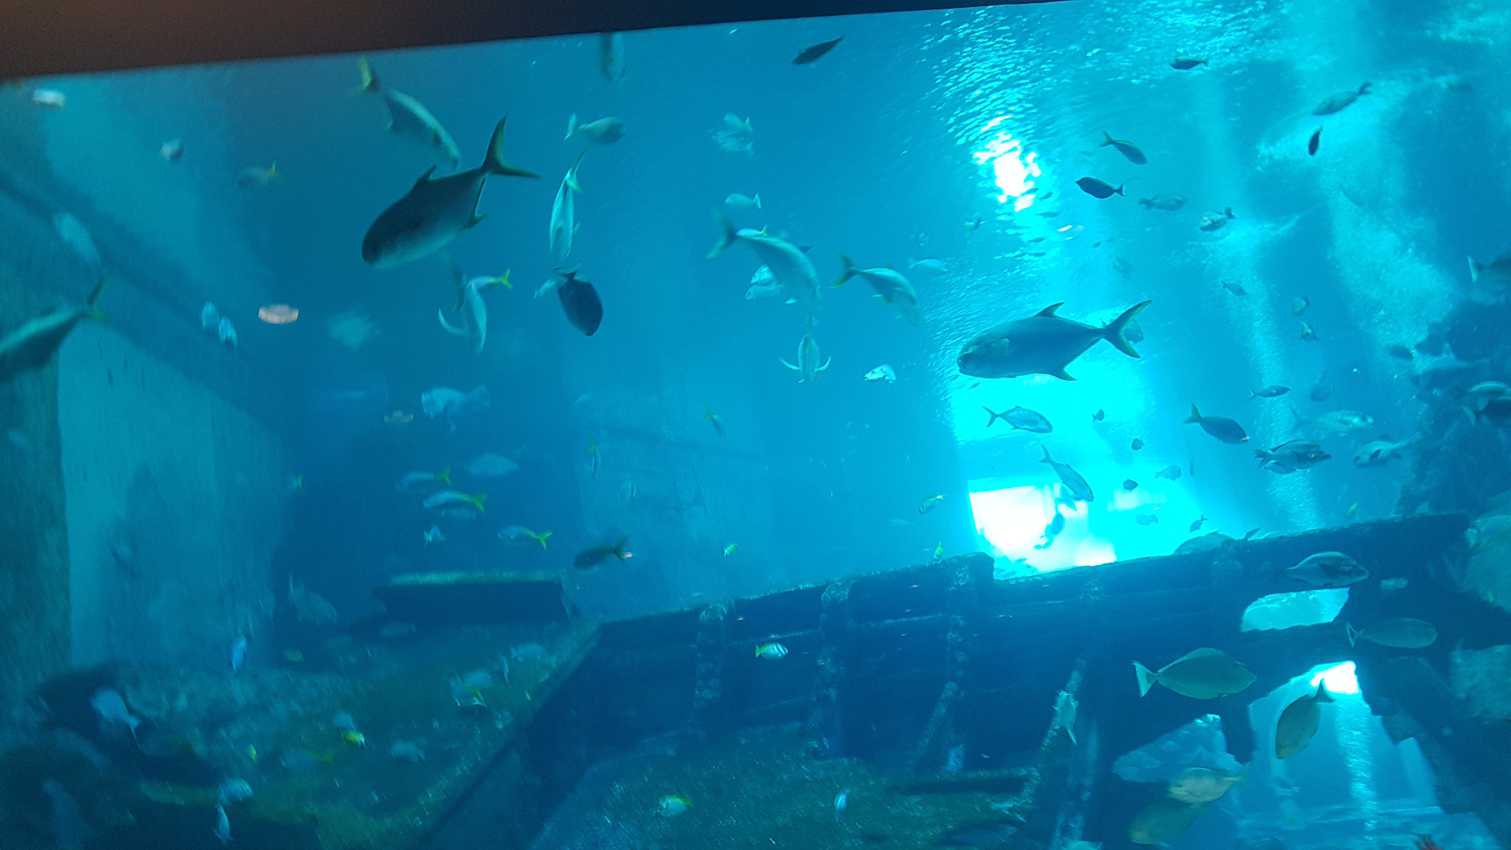 Fish in the tank in Singapore aquarium. 